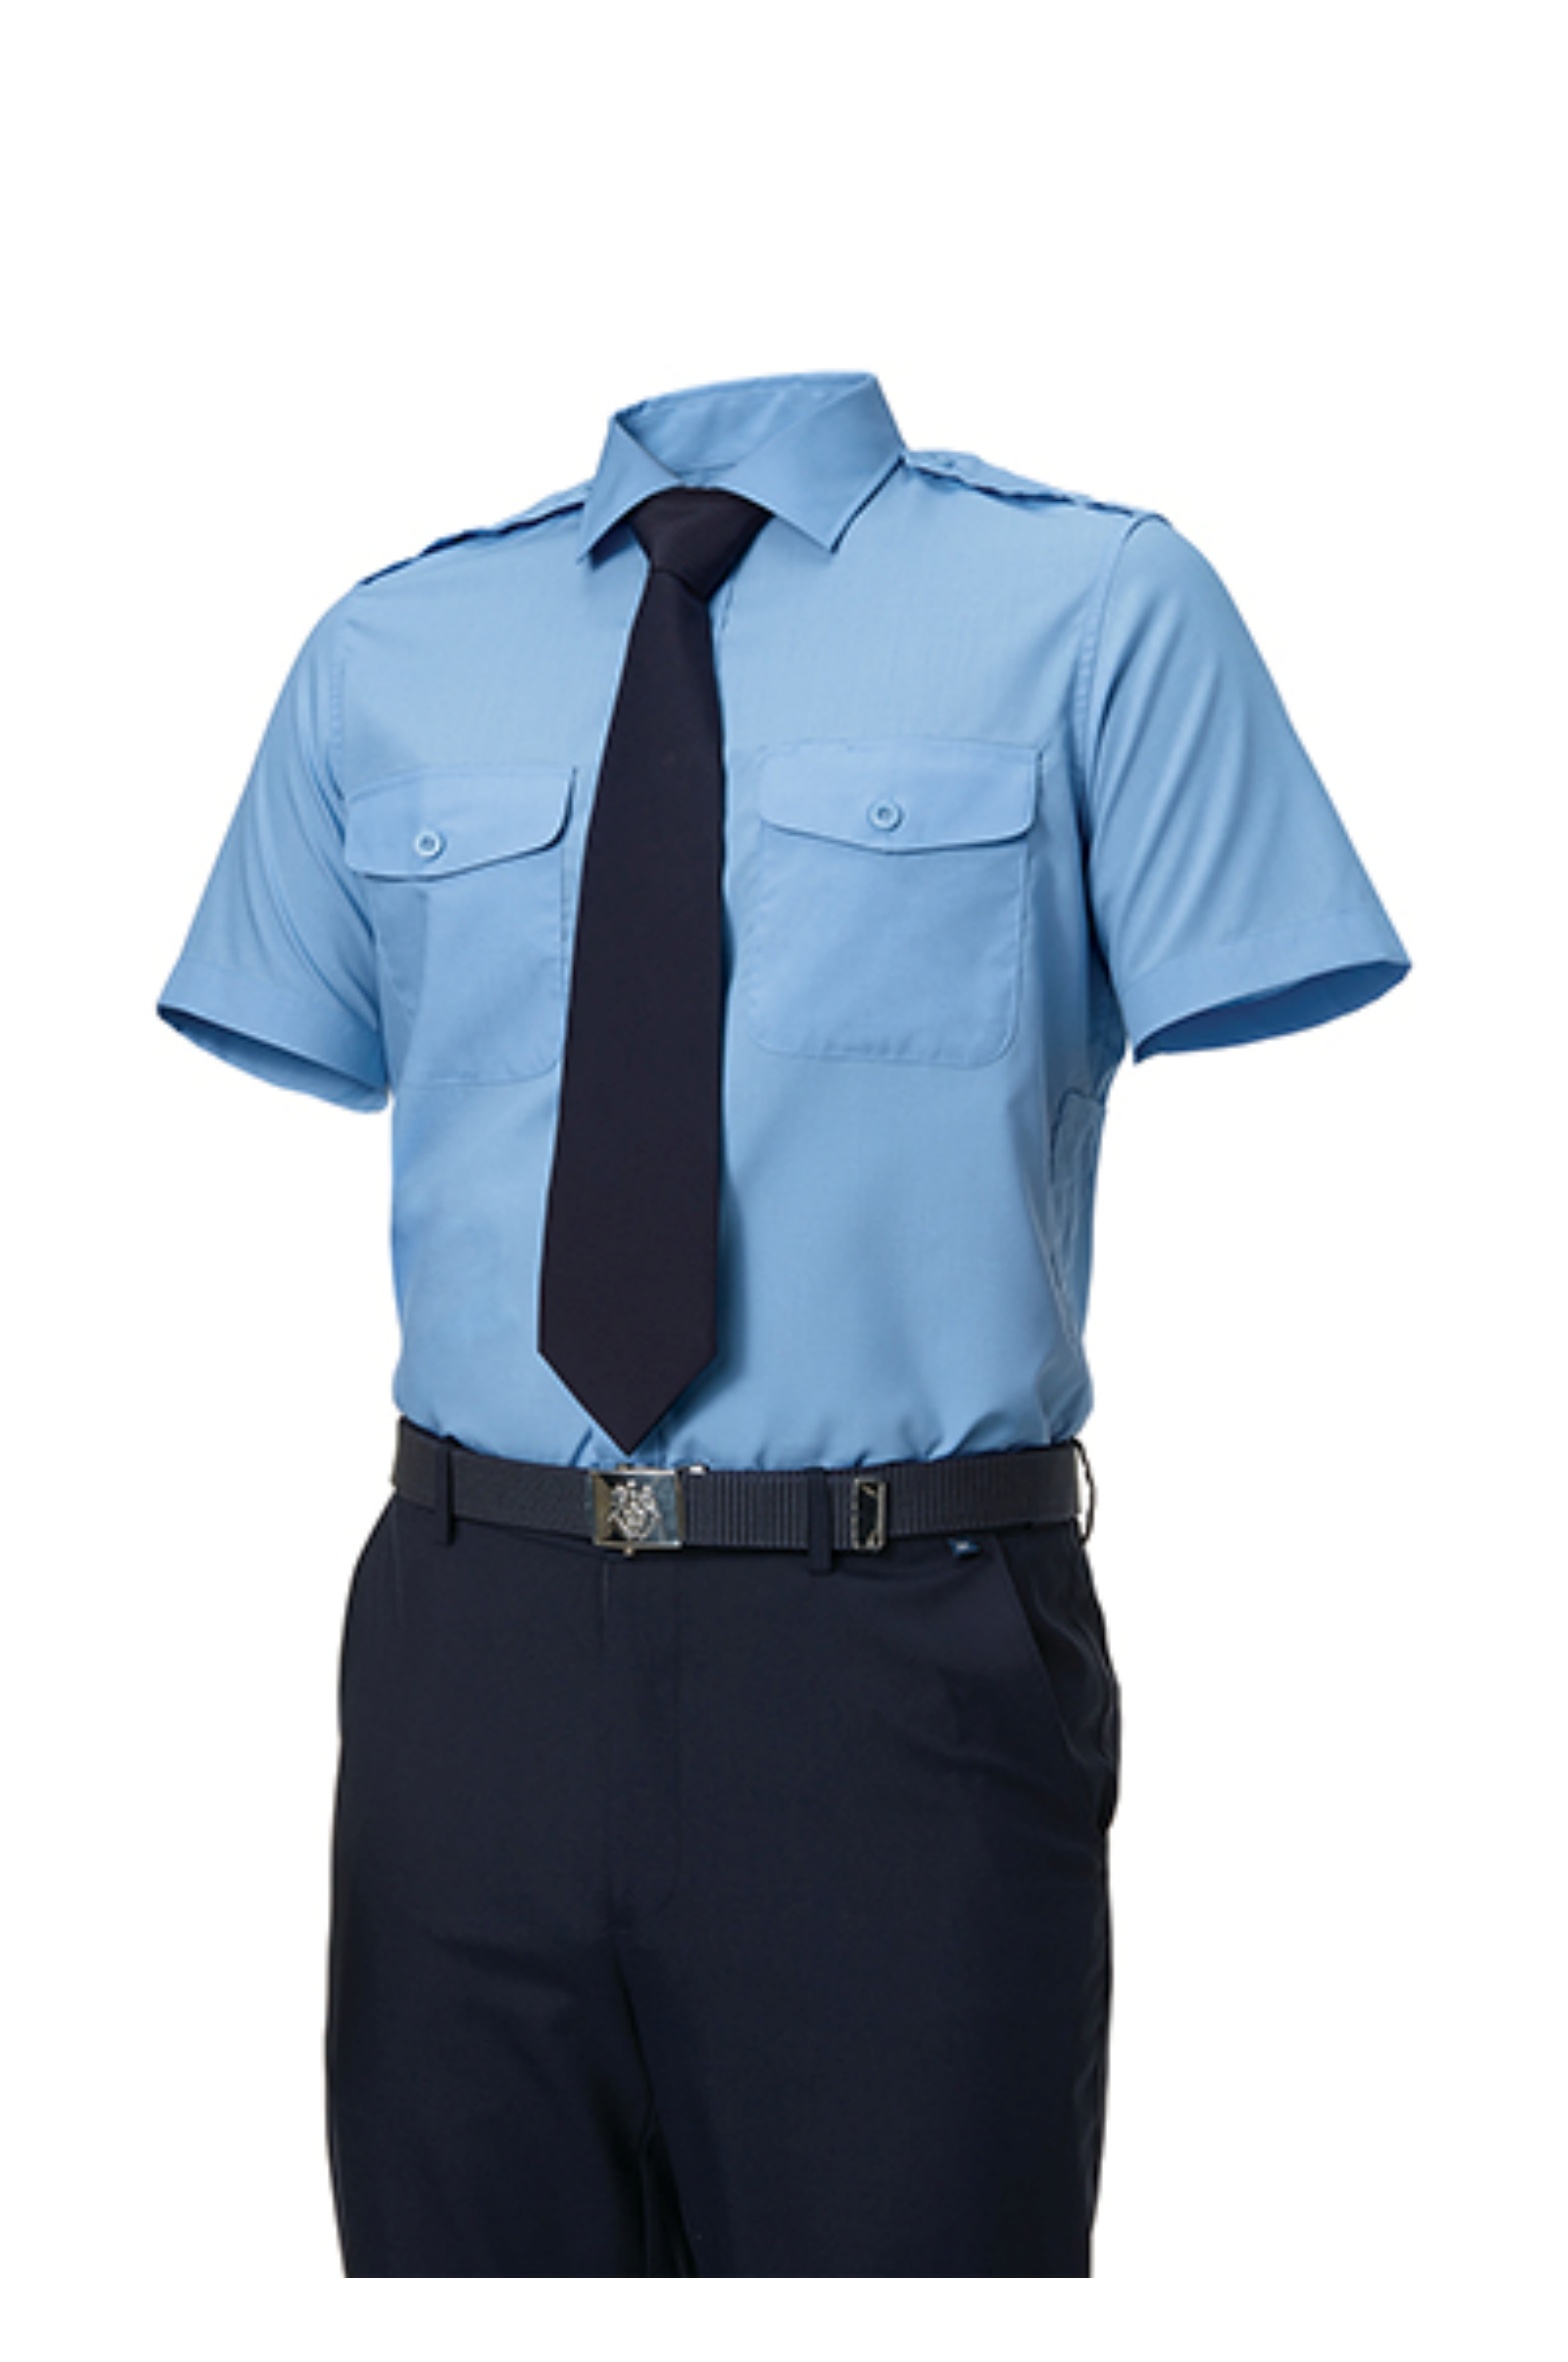 ZB-Y1045 (블루)지벤 춘하 경비복 반팔 셔츠